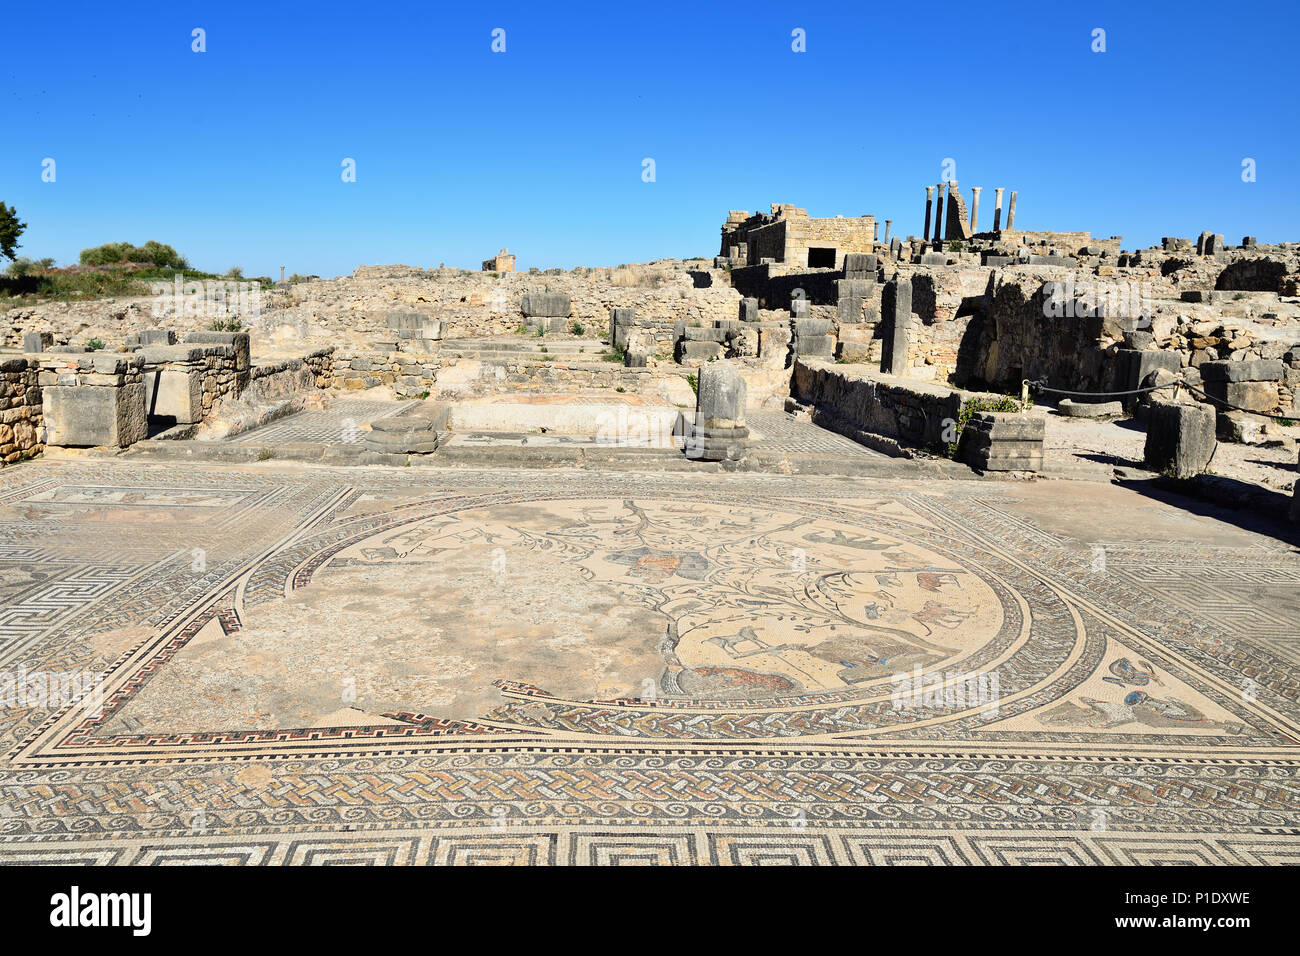 Ampio complesso di rovine della città romana Volubilis - di antica città capitale della Mauritania nella parte centrale del Marocco dalla città di Meknes. Il Foto Stock